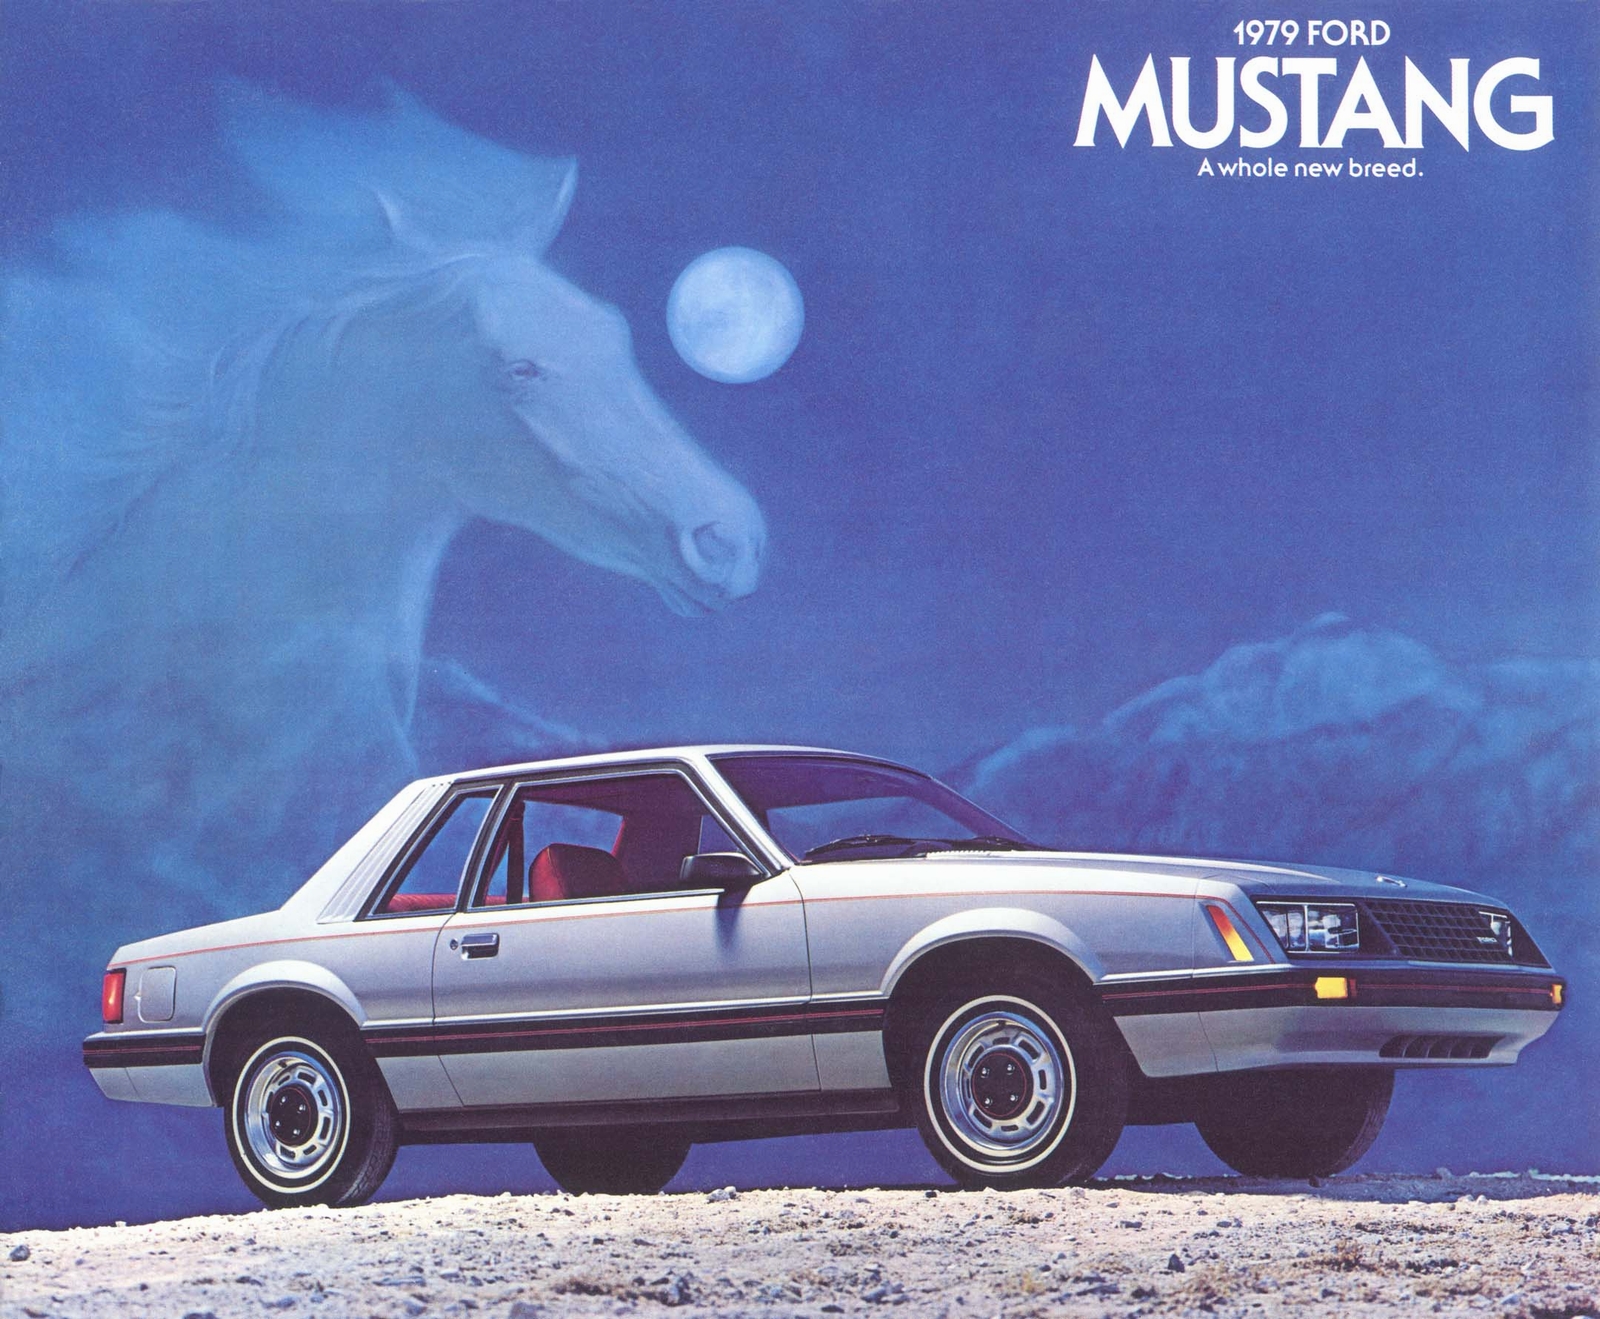 n_1979 Ford Mustang-01.jpg